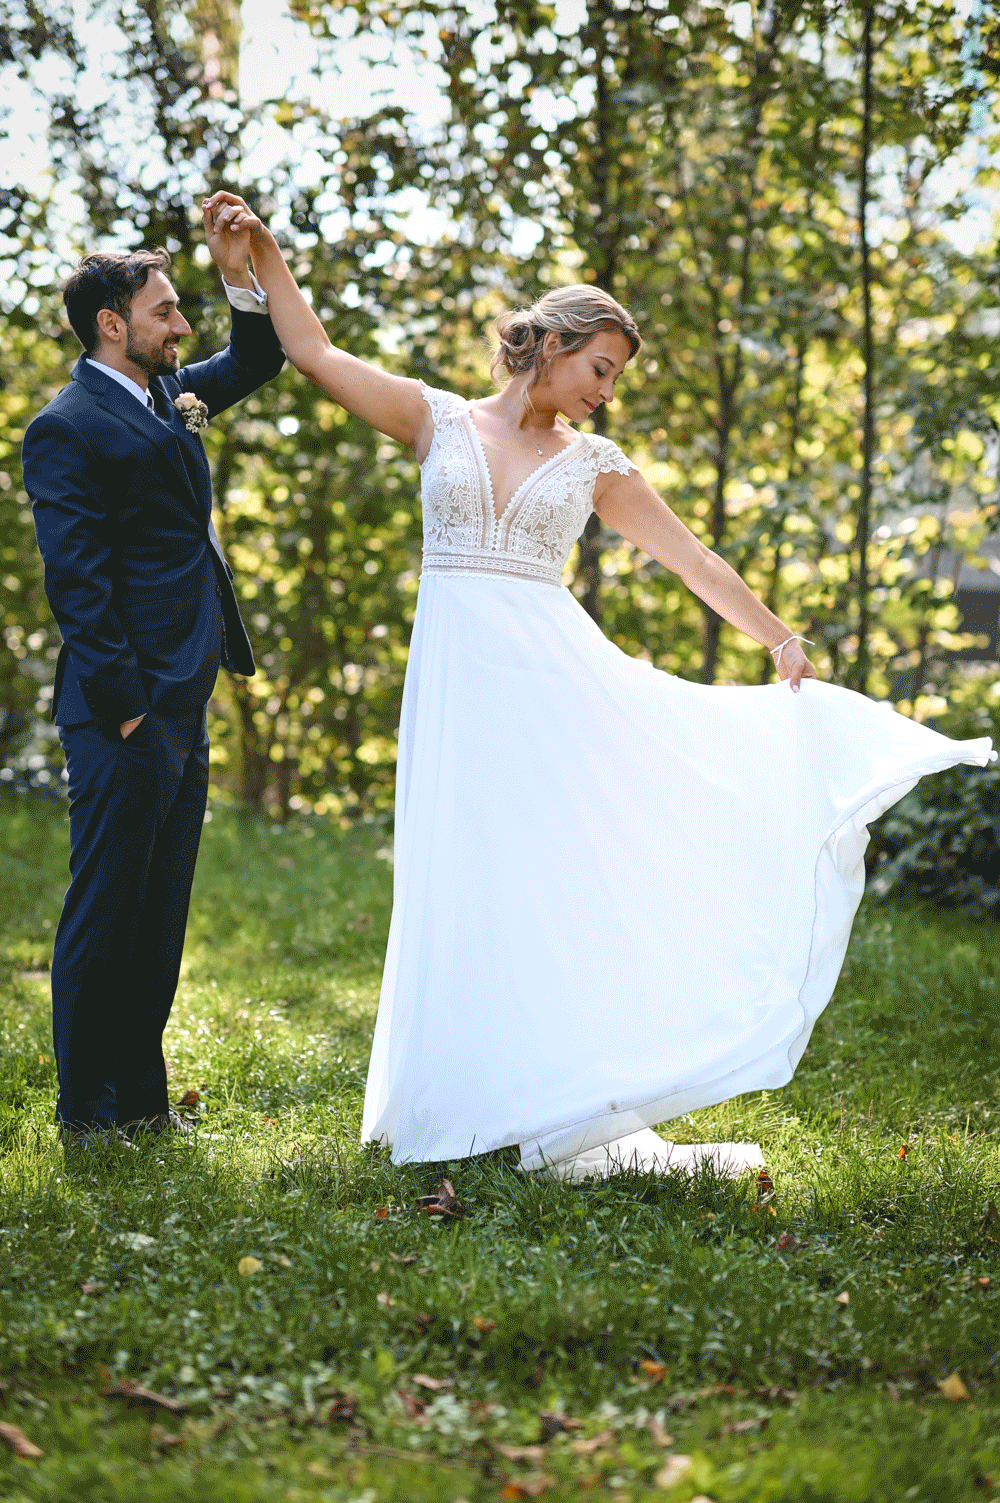 Braut wirbelt ihr Kleid Bräutigam hält die Hand der Braut